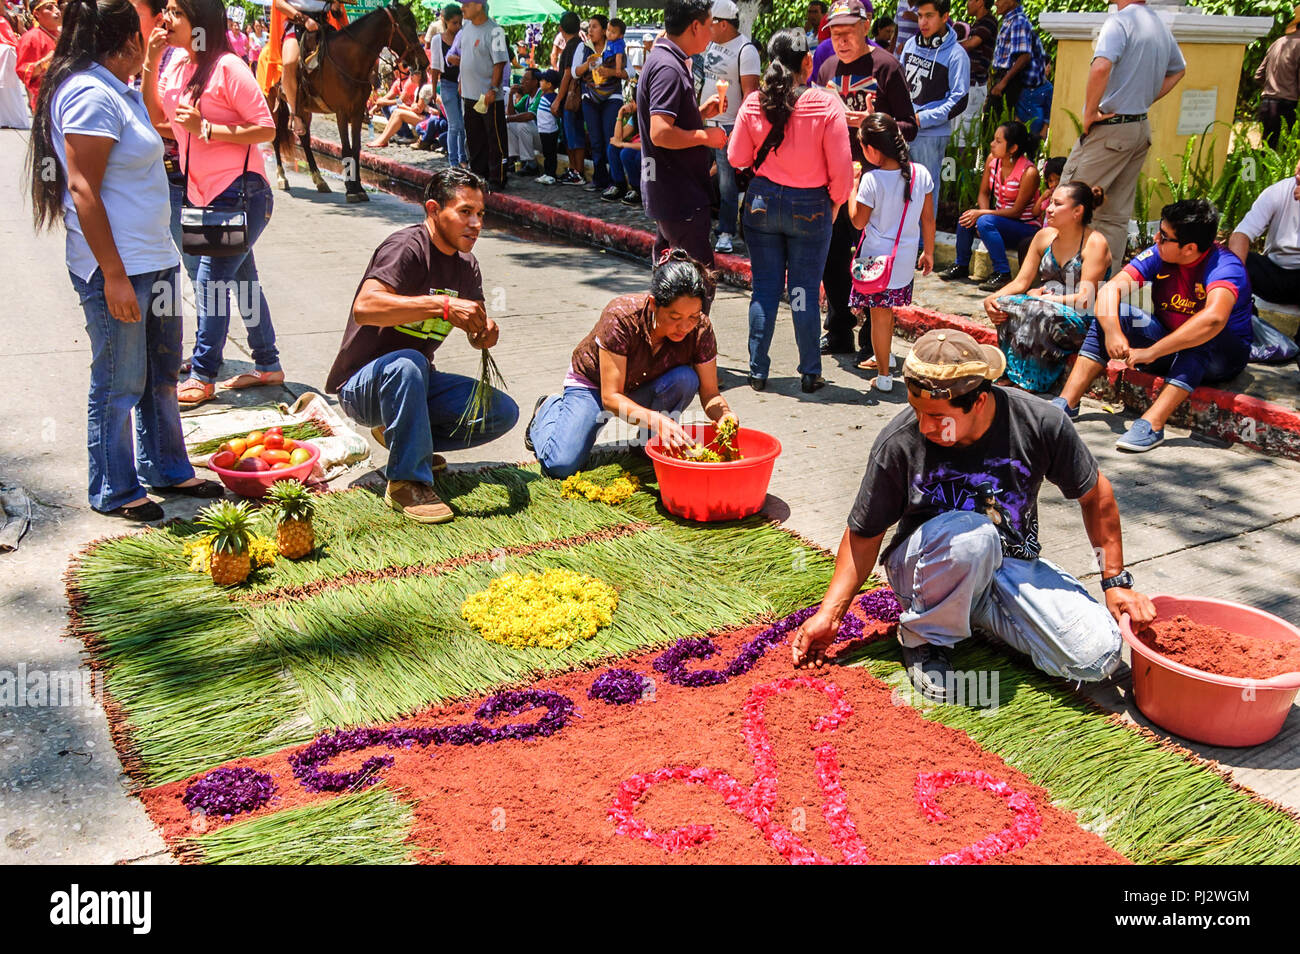 Antigua, Guatemala - April 2, 2015: Die Heilige Woche Prozession Teppich in der kolonialen Stadt mit dem berühmtesten Feierlichkeiten zur Karwoche in Lateinamerika. Stockfoto